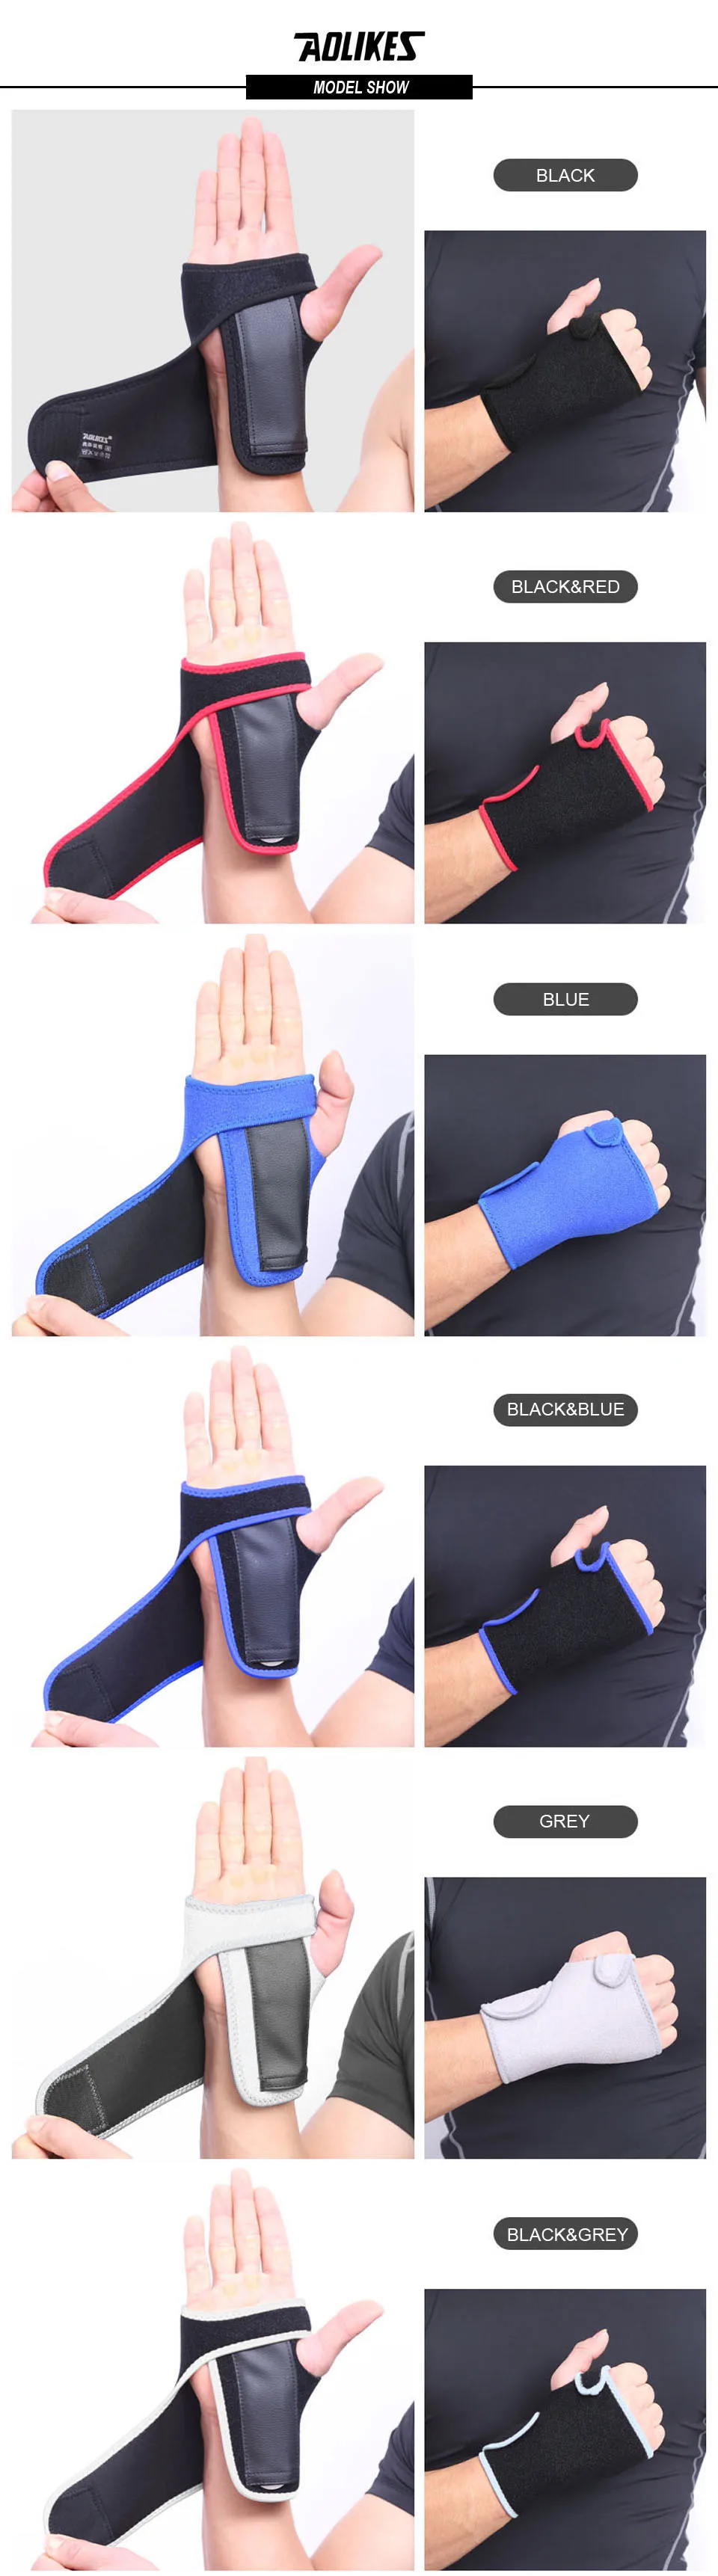 AOLIKES 1 шт. бандаж Ортопедический карпальный туннель рука запястья Поддержка Brace полезные открытый шина растяжения артрит ленточный ремень